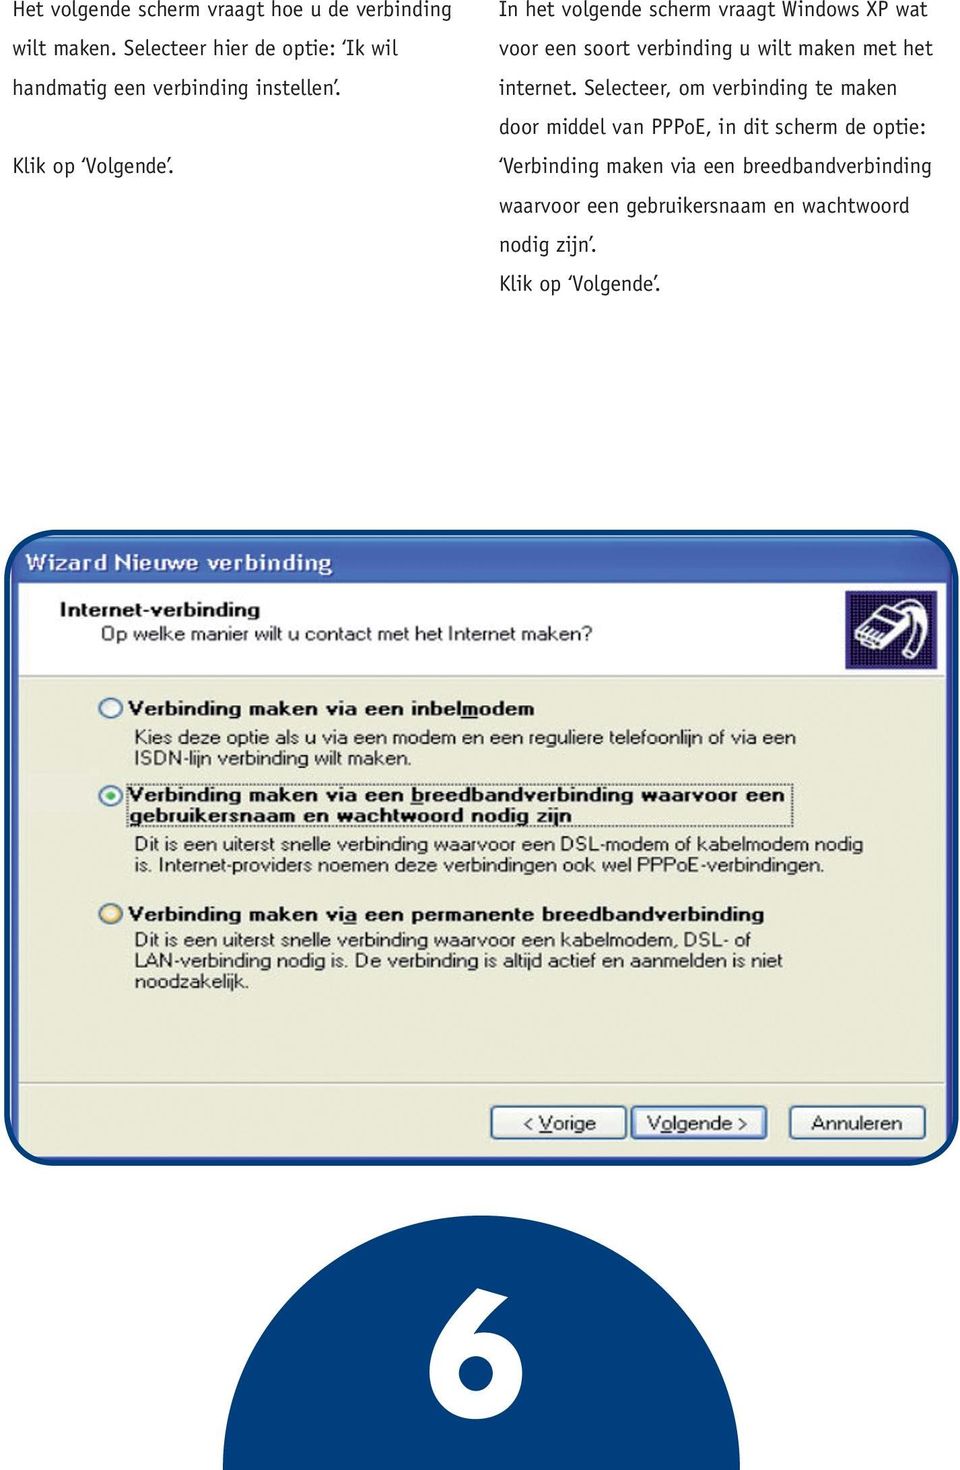 In het volgende scherm vraagt Windows XP wat voor een soort verbinding u wilt maken met het internet.